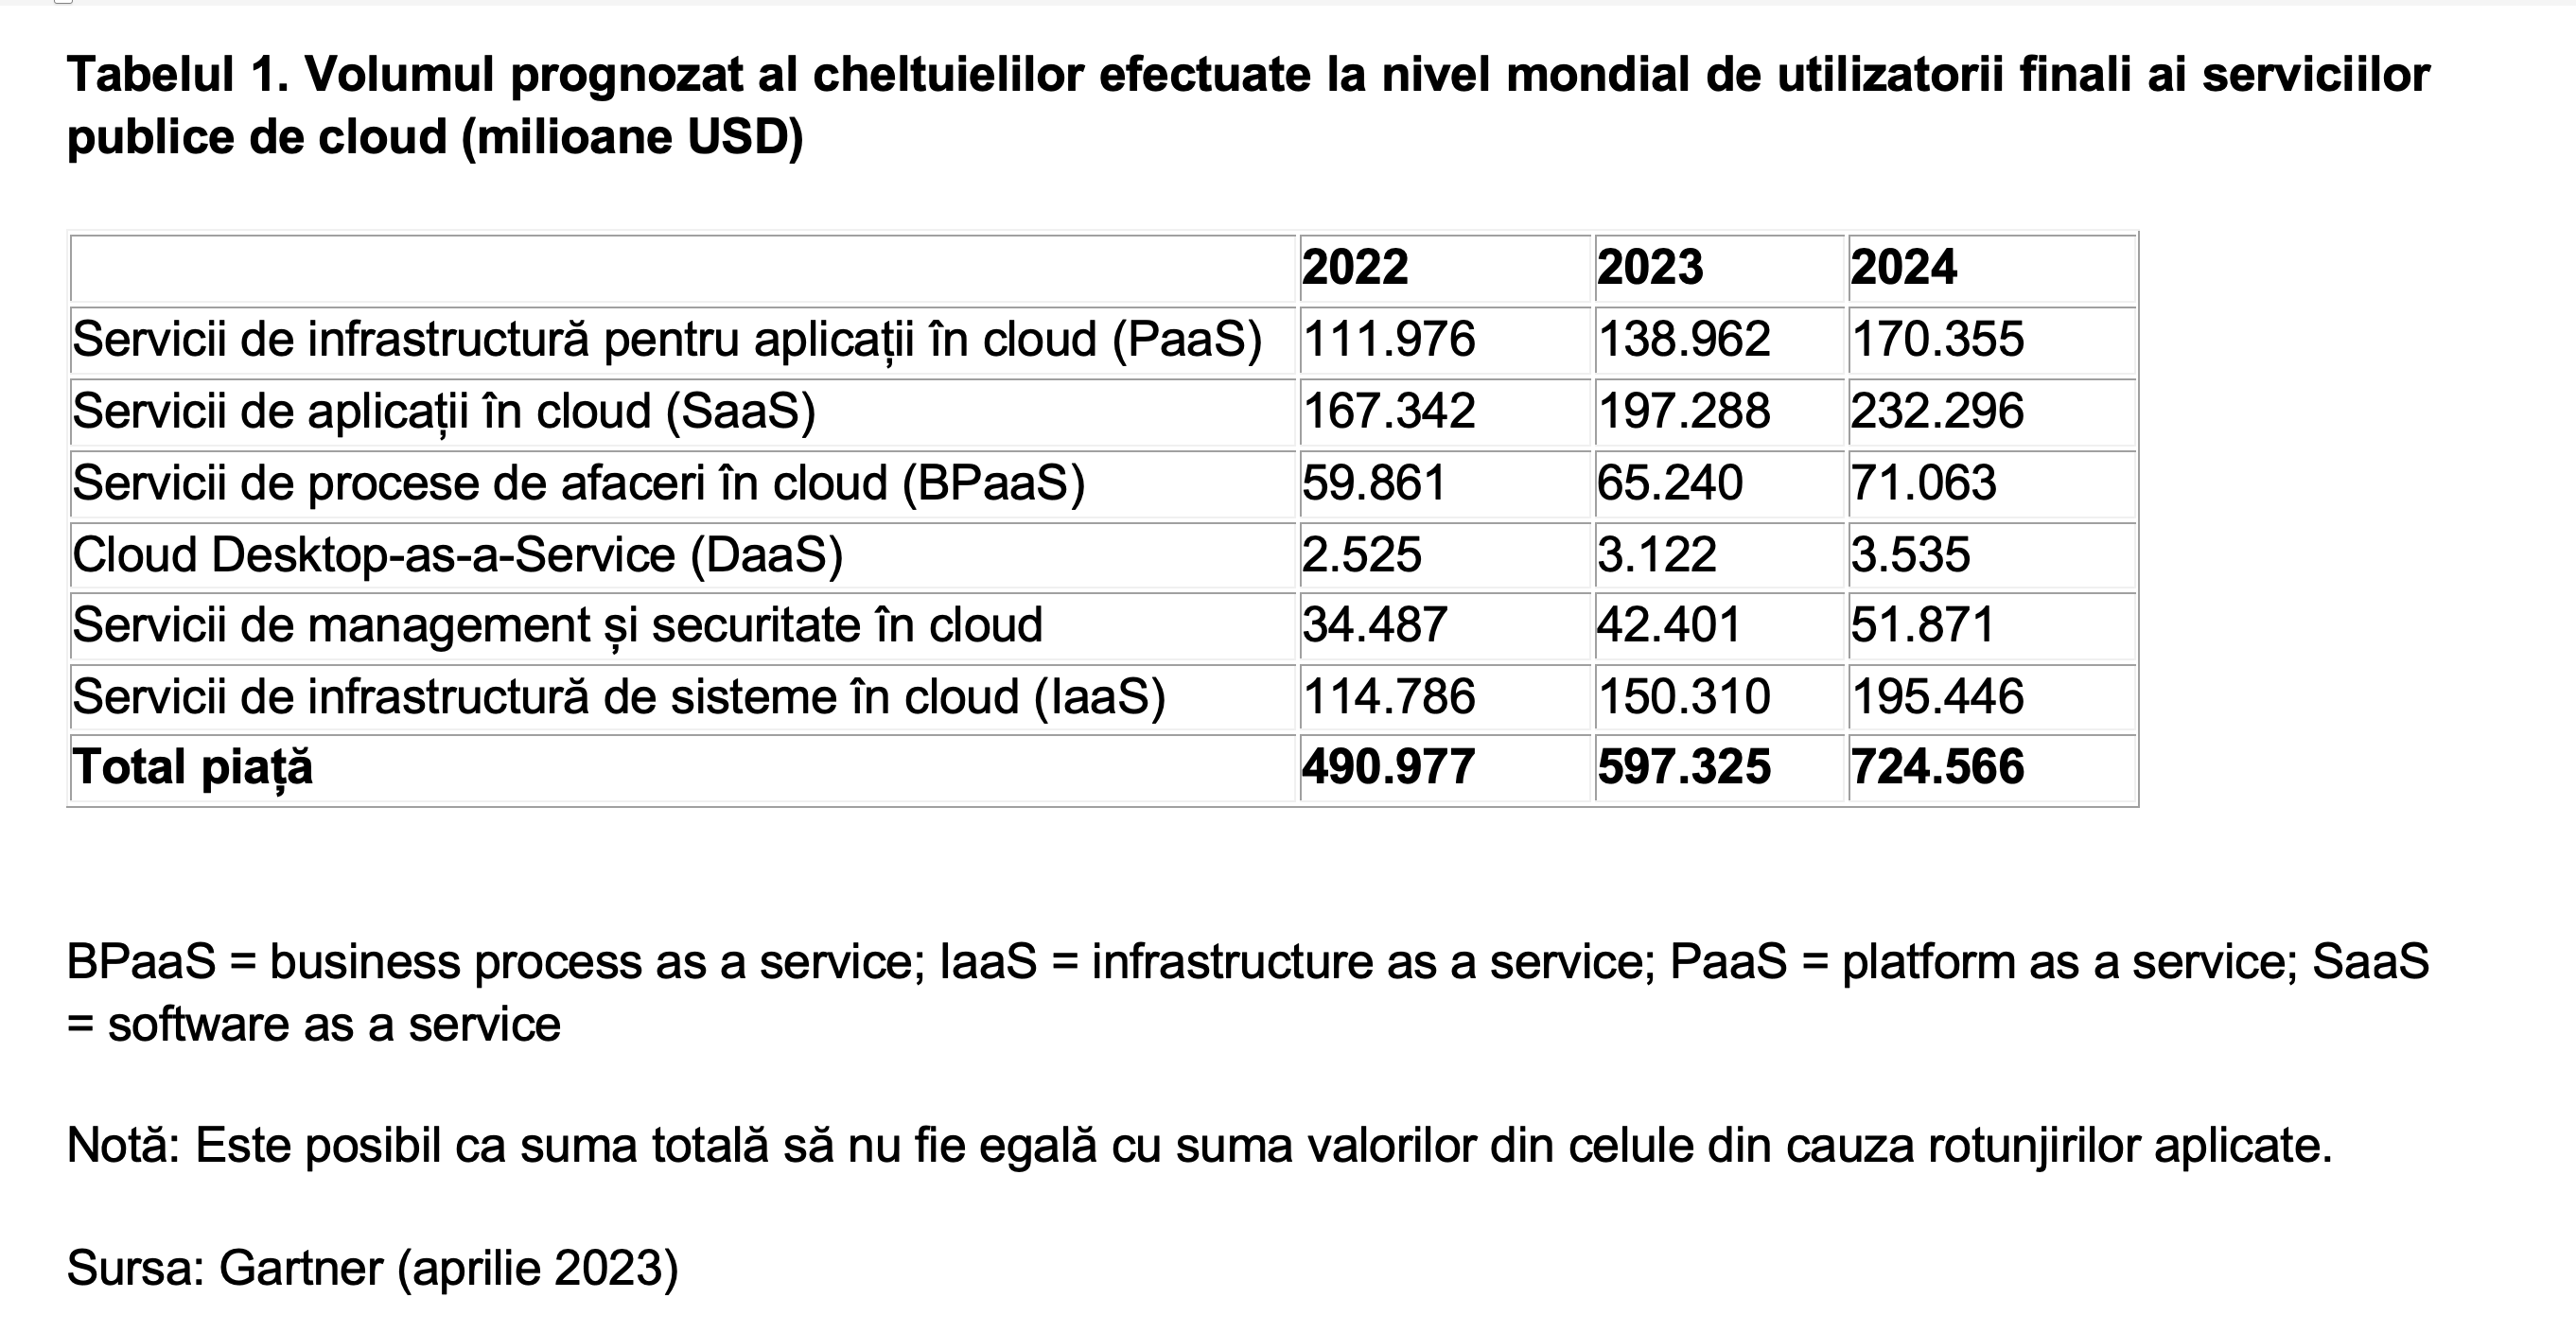 Gartner: Volumul global al cheltuielilor efectuate de utilizatorii finali de cloud public se va apropia de 600 miliarde USD în 2023